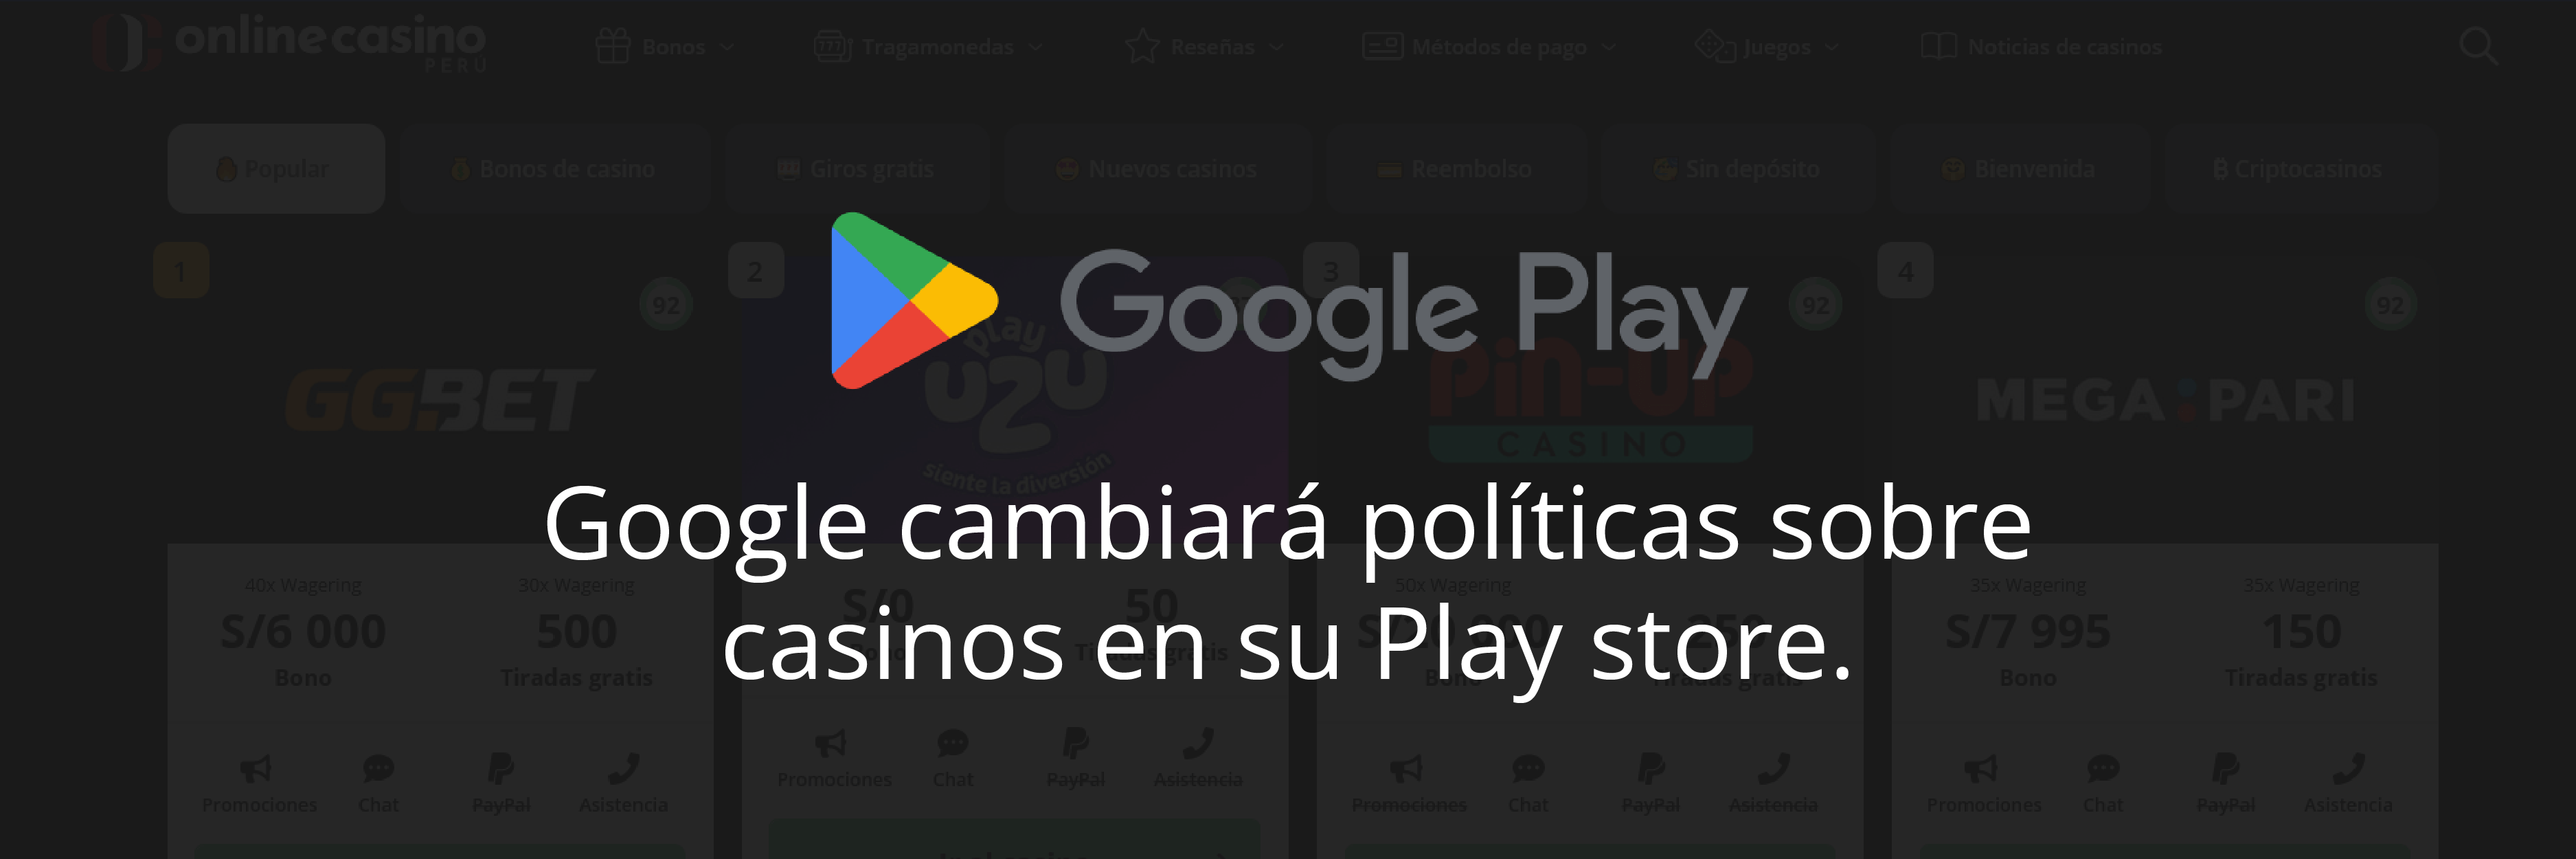 Google revoluciona Play Store con nuevas políticas